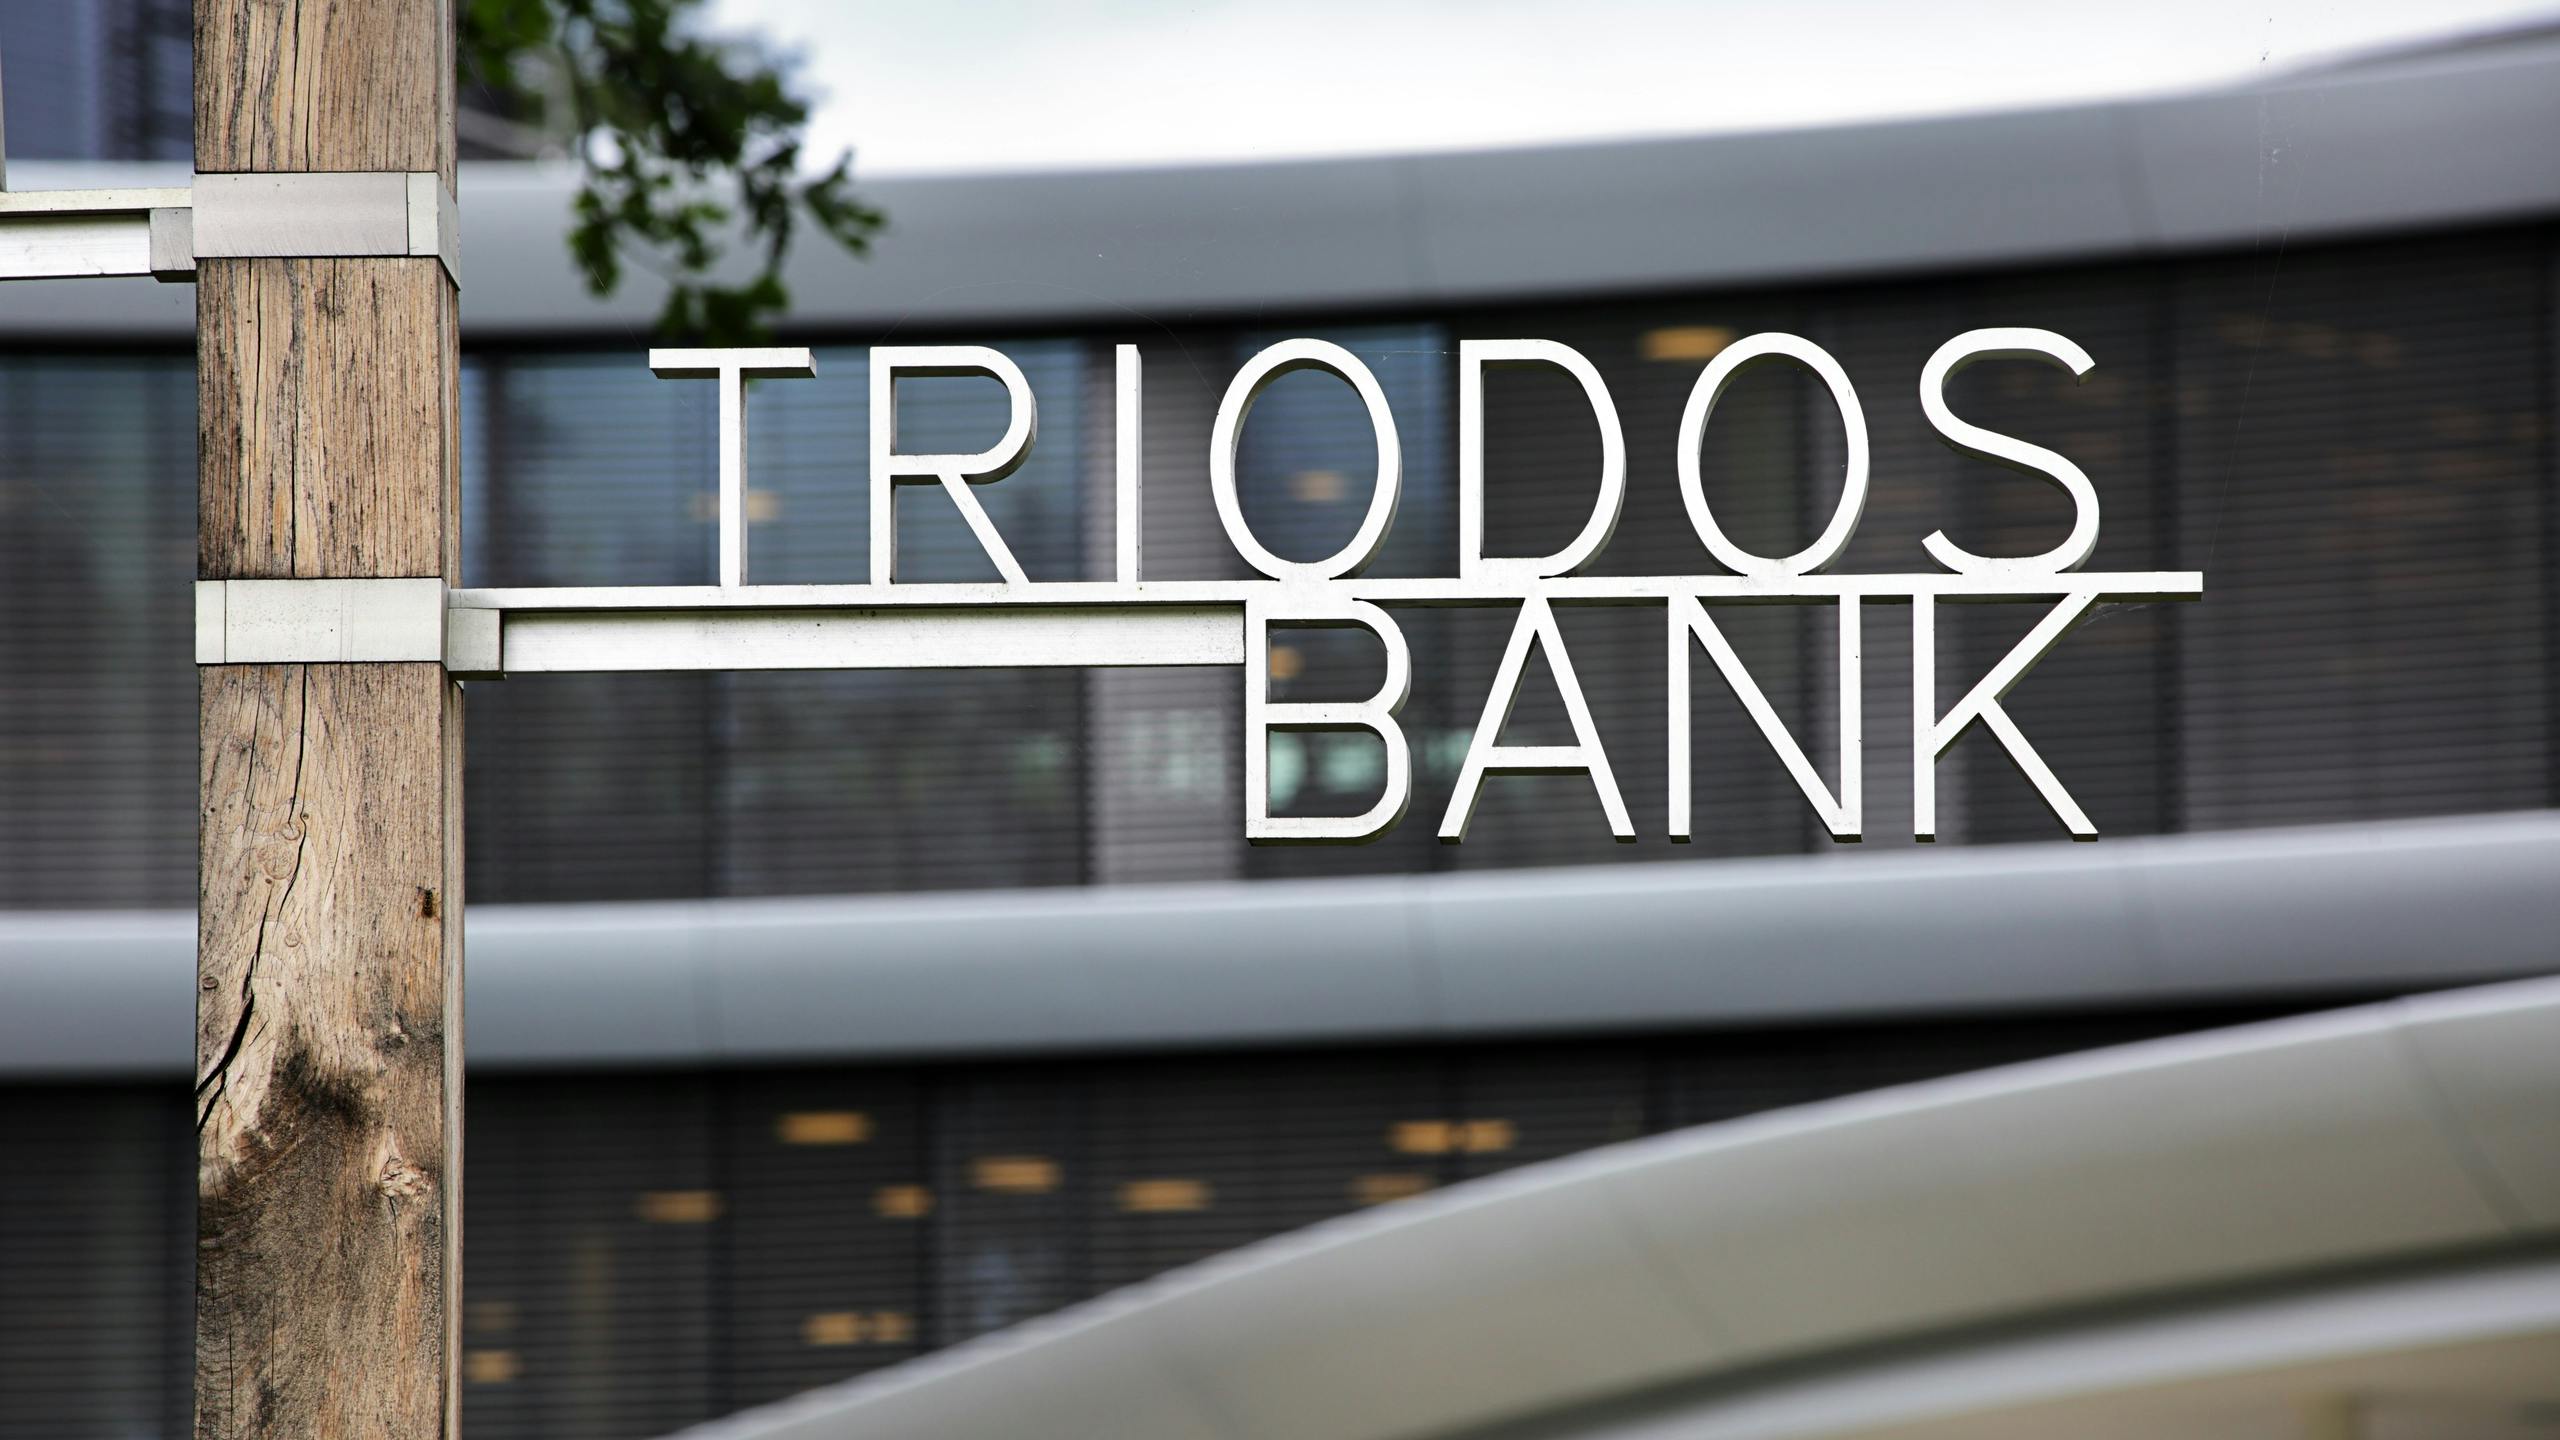 CEO Triodos Bank: 'Banenreductie nodig om impact te kunnen blijven maken' 